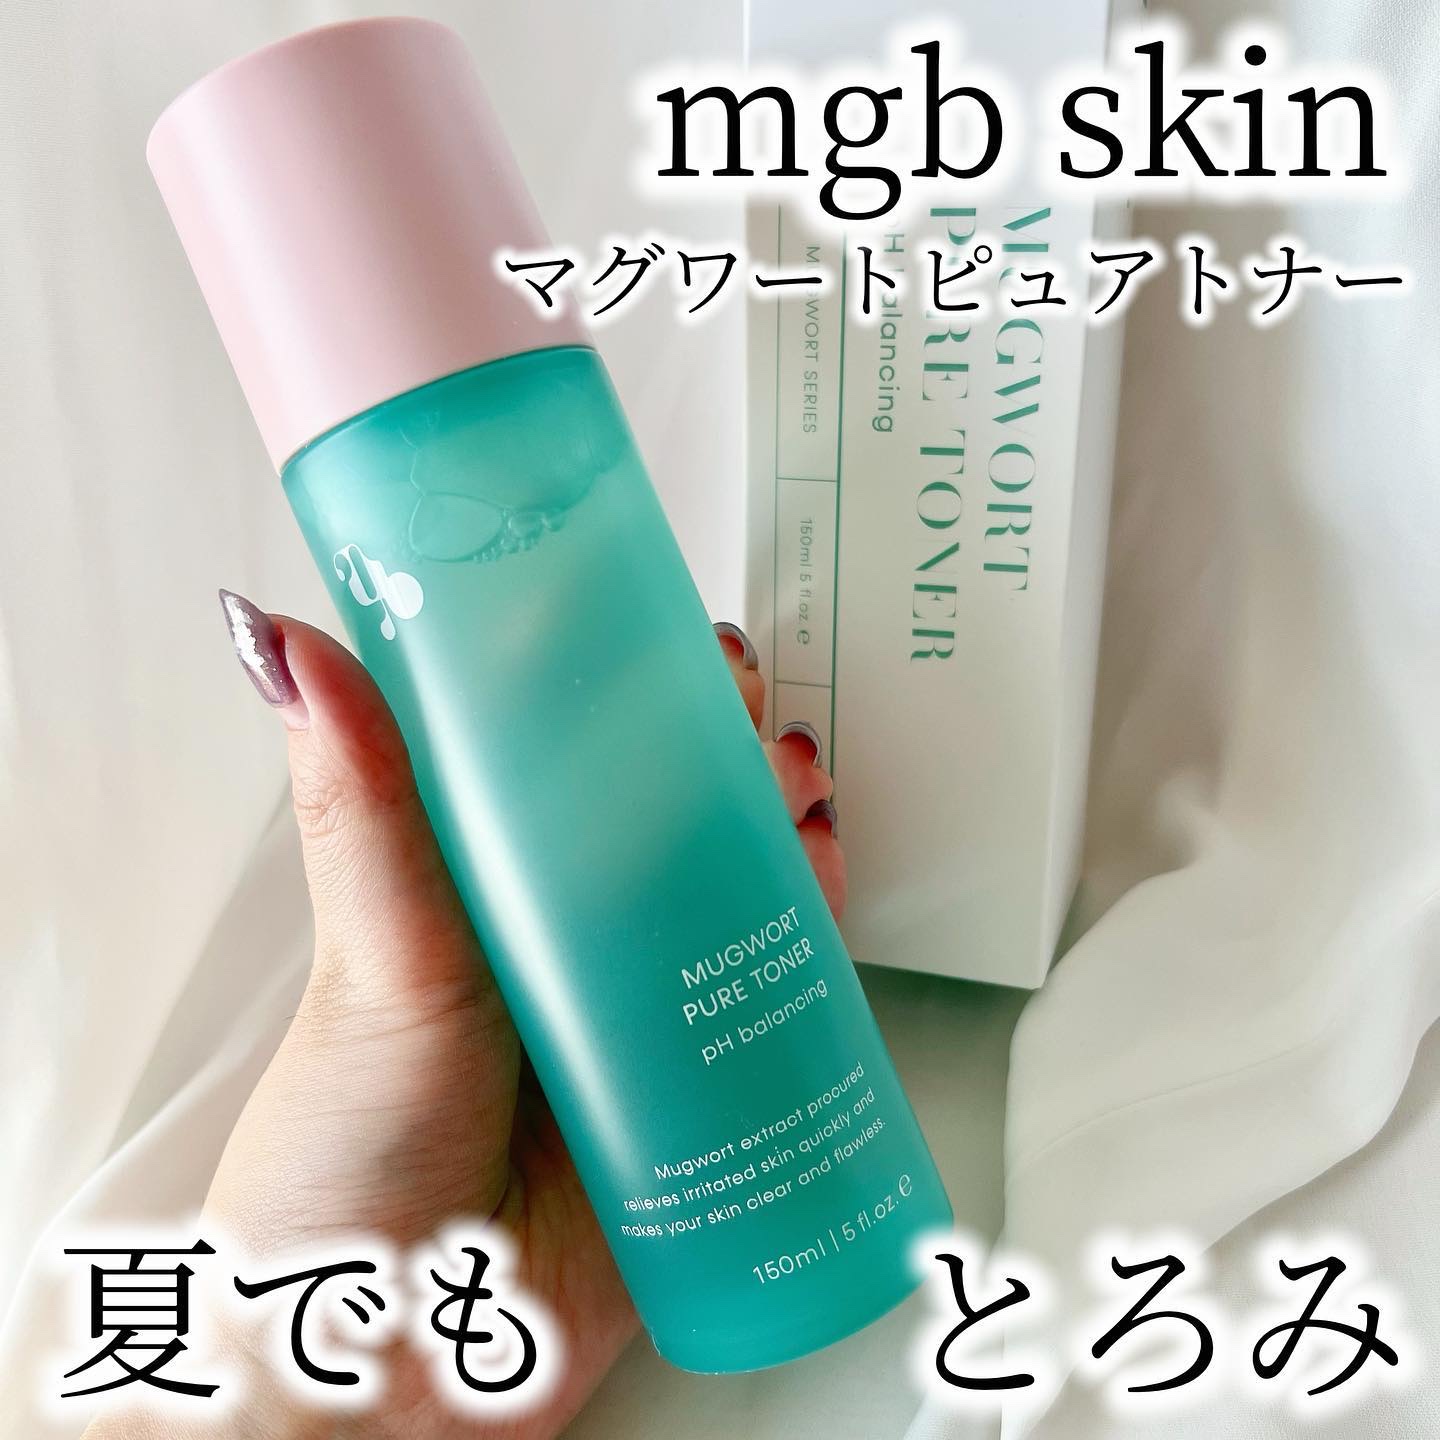 mgb skin マグワートピュアトナー BIGセット - 口臭防止/エチケット用品